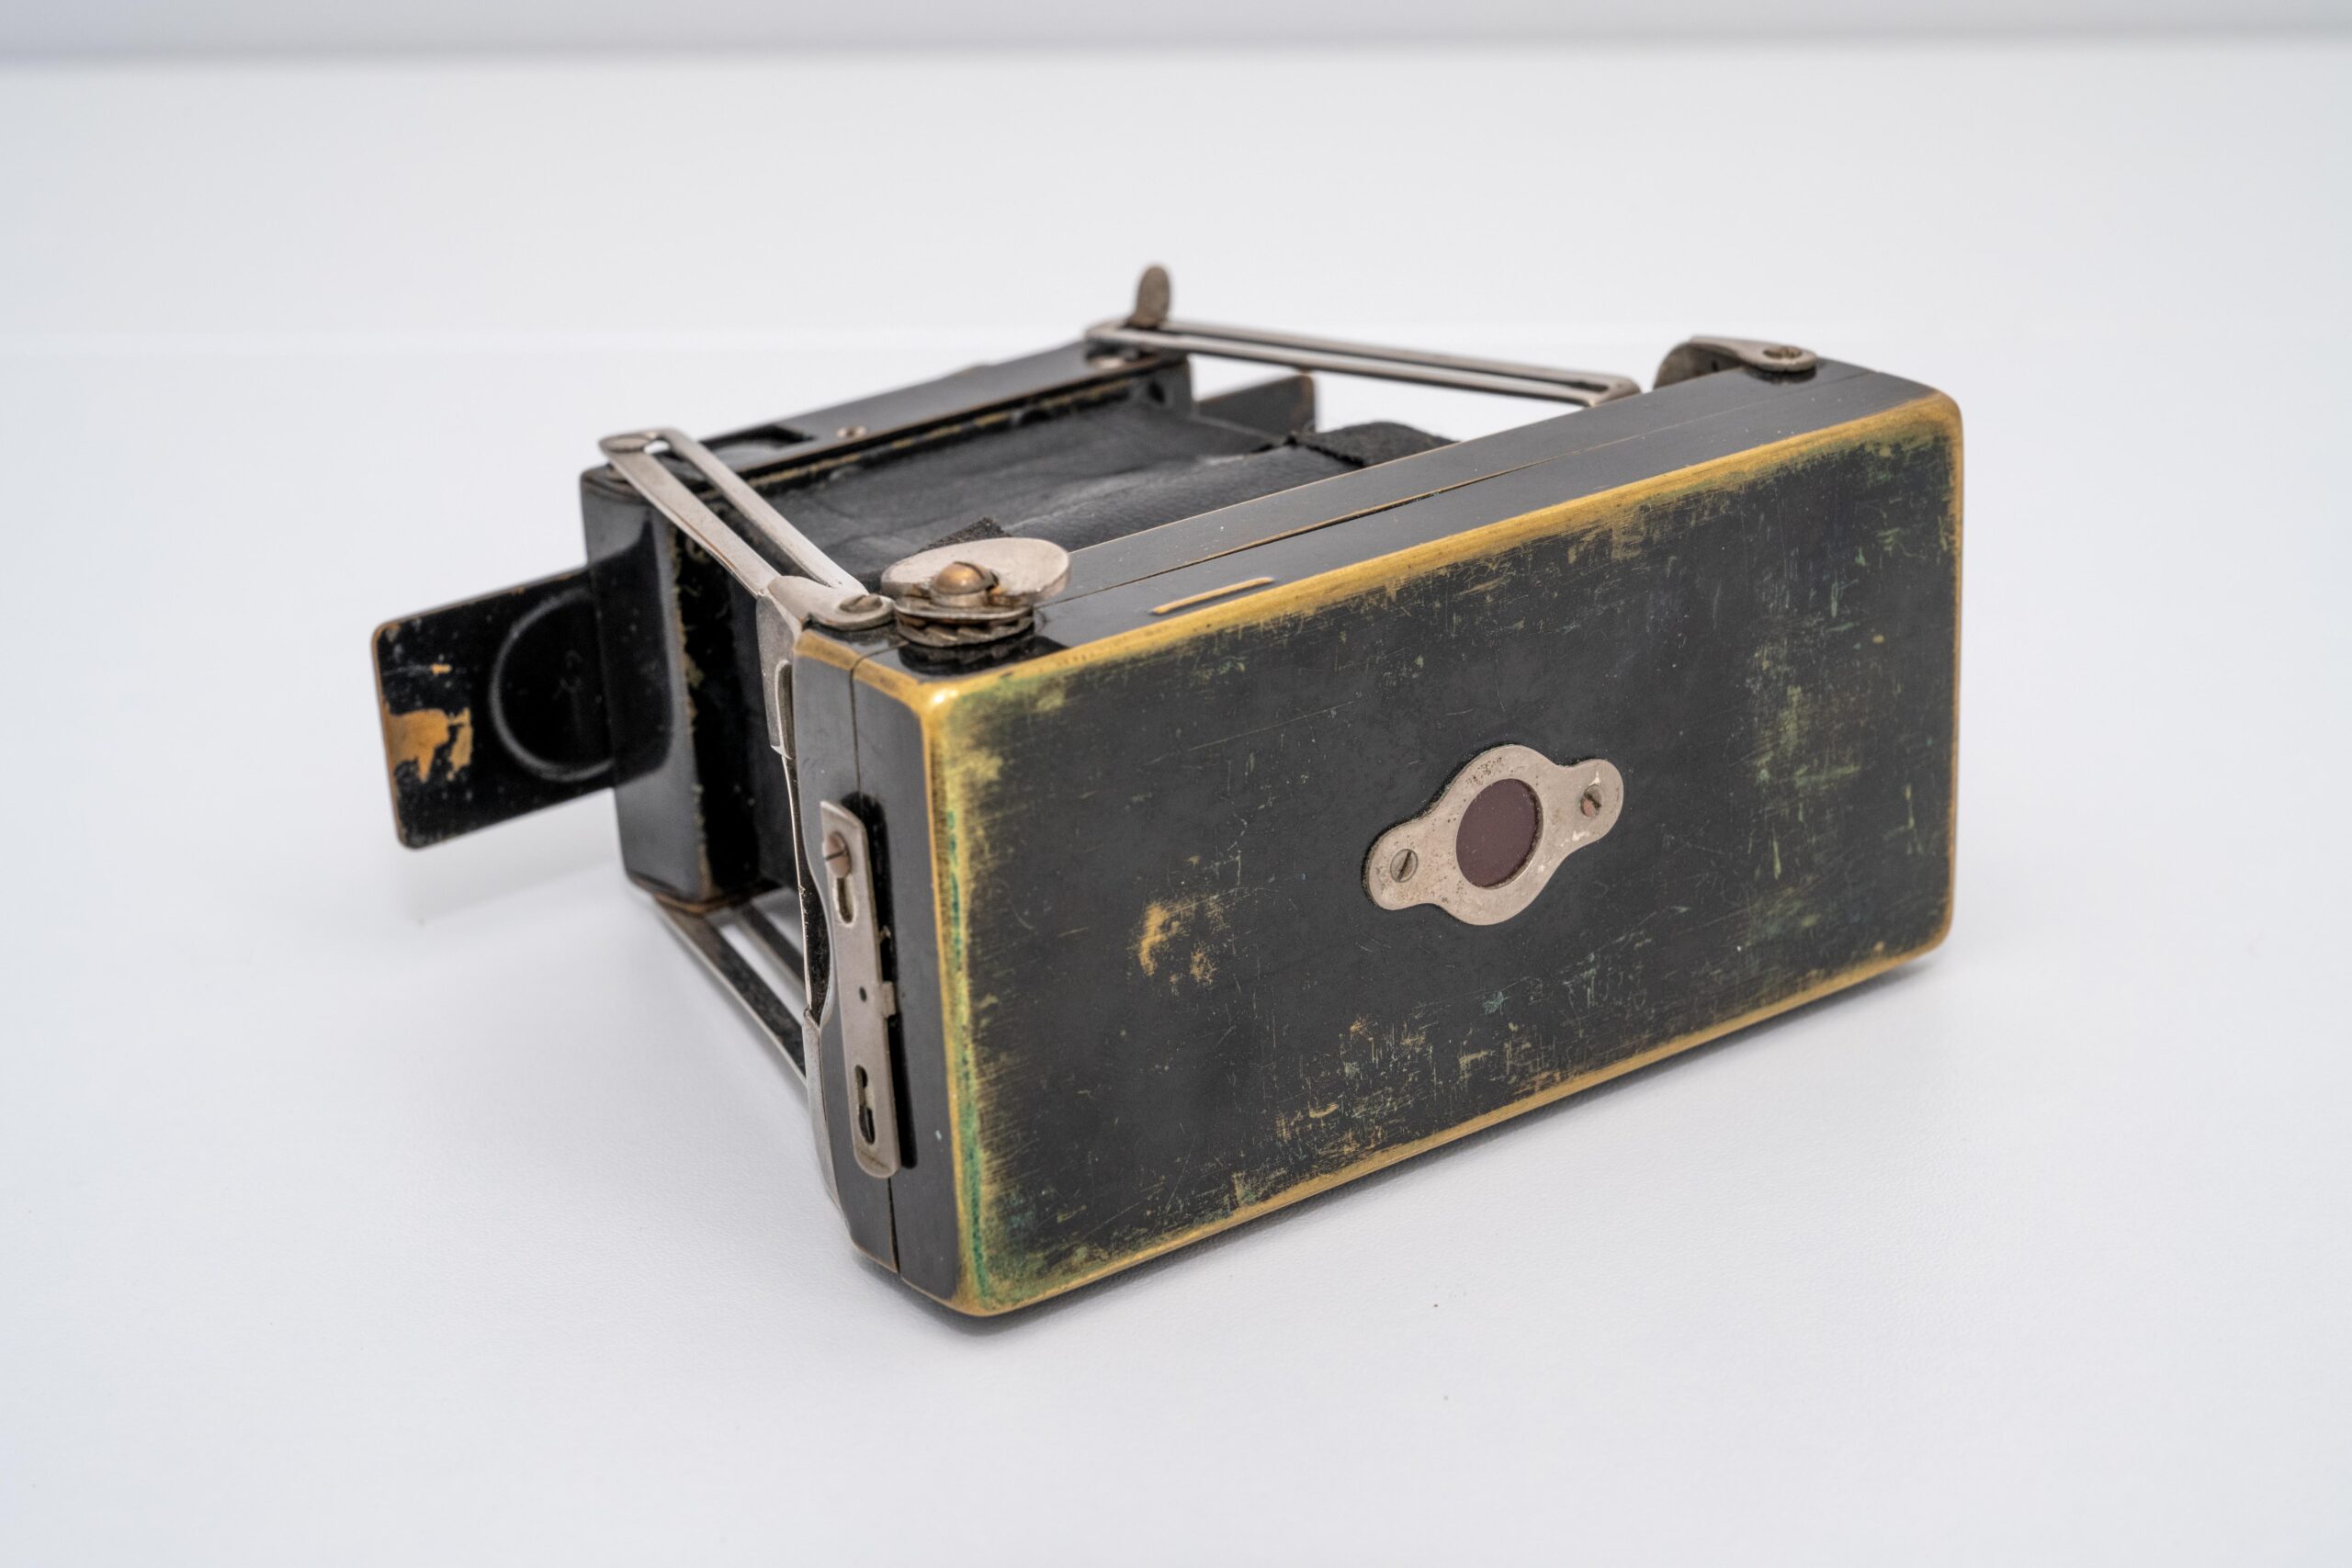 Cooke Anastigmat Ensignette antique camera for sale